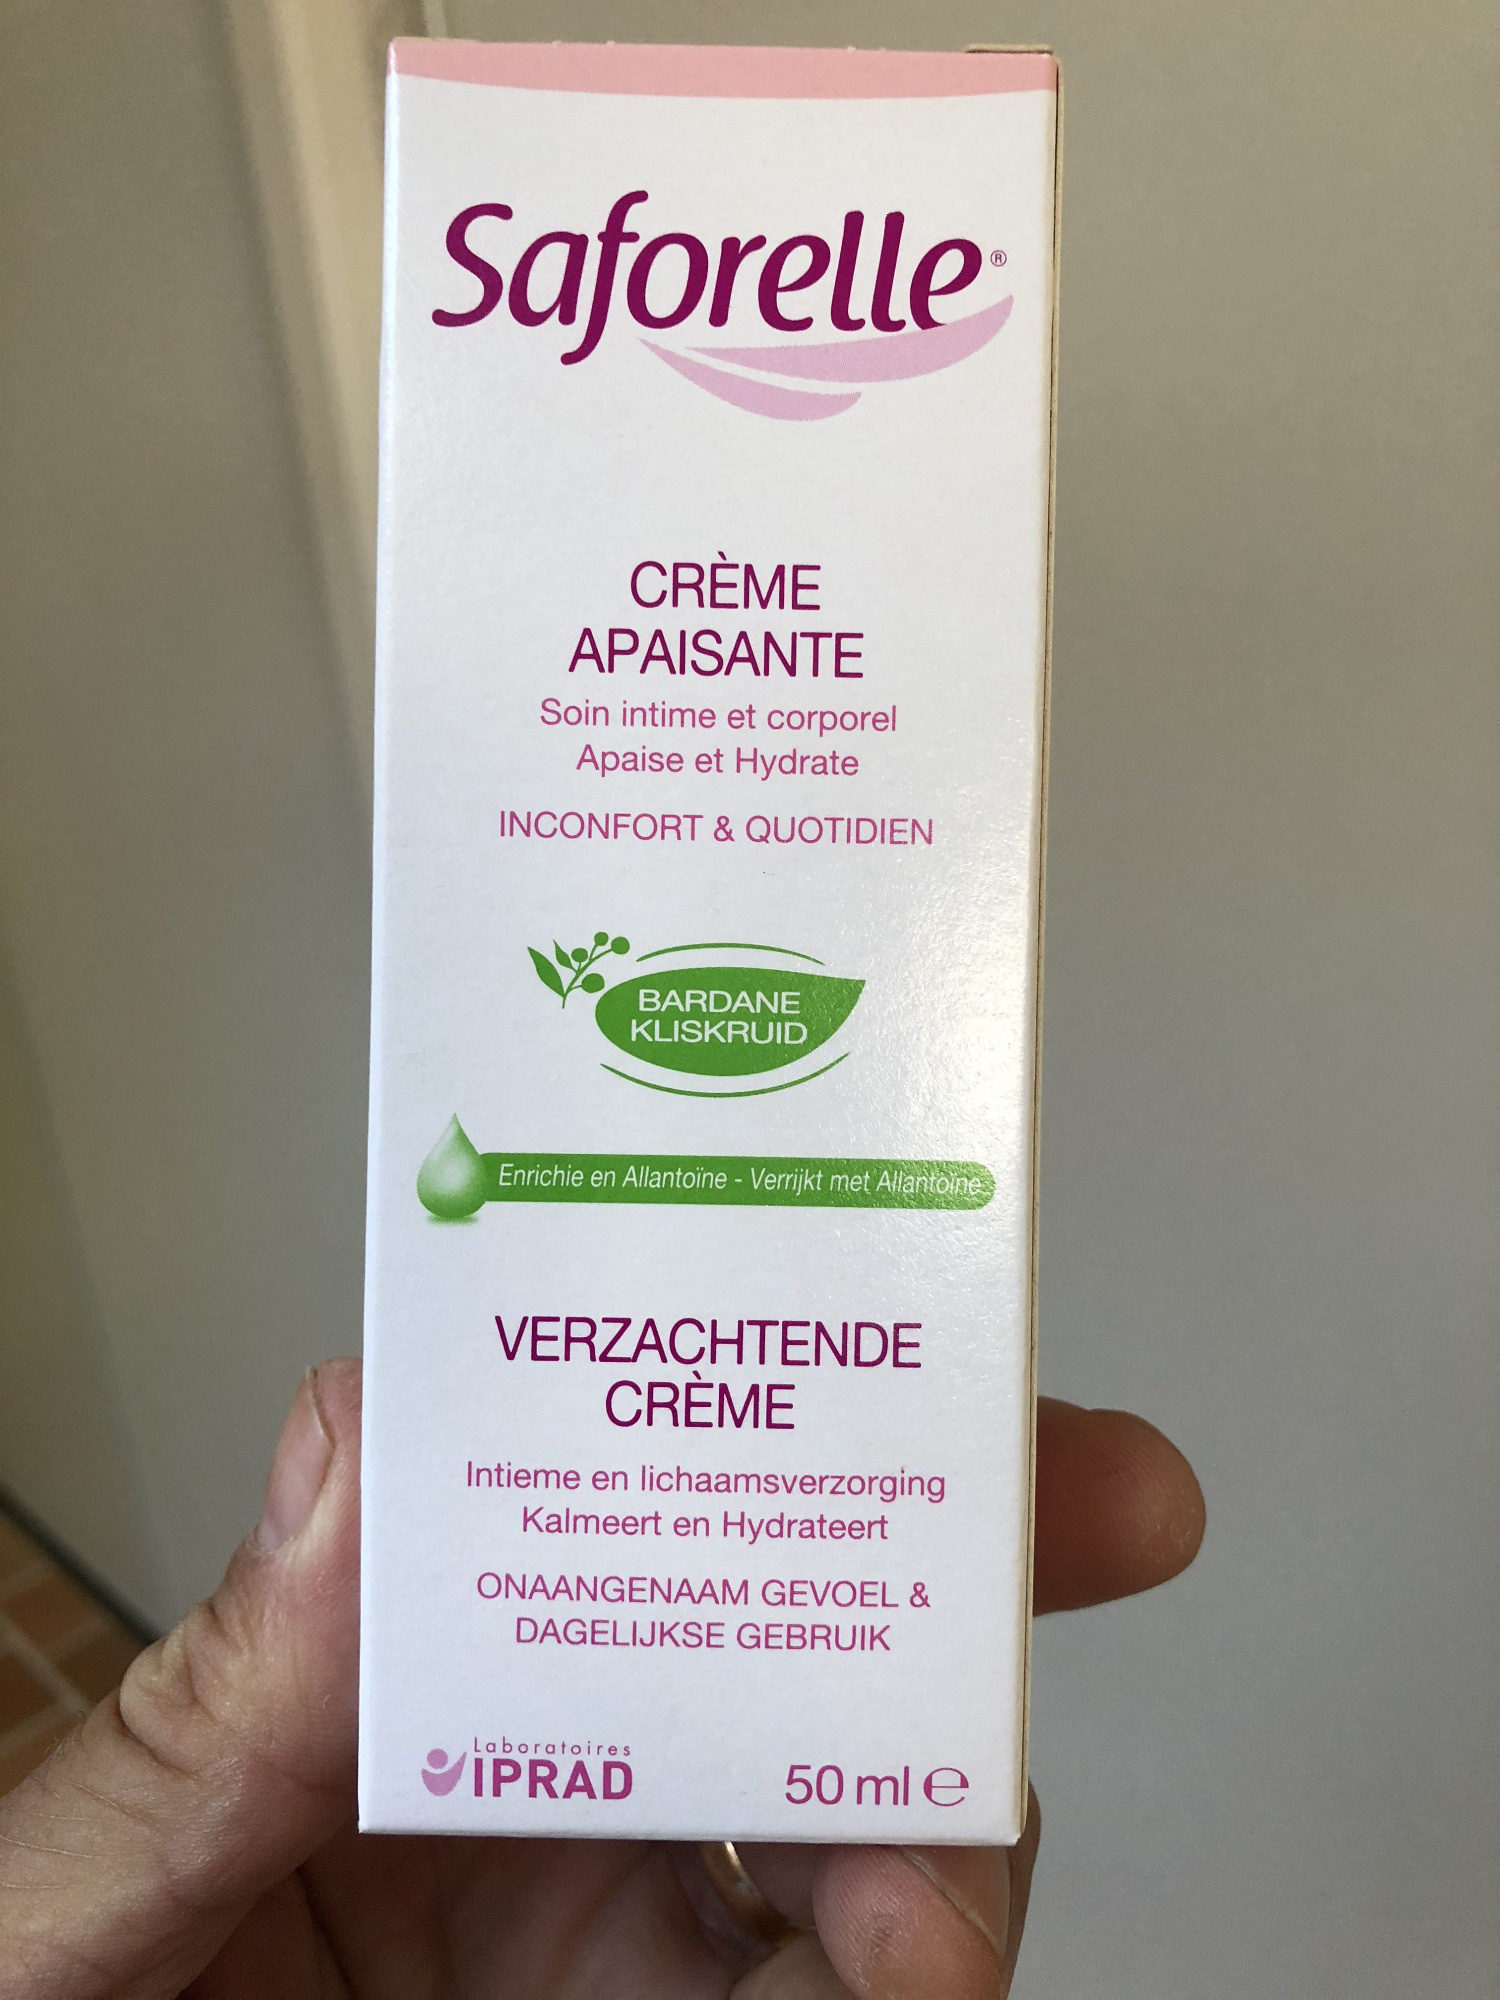 Saforelle - La Crème Apaisante Intime Saforelle est